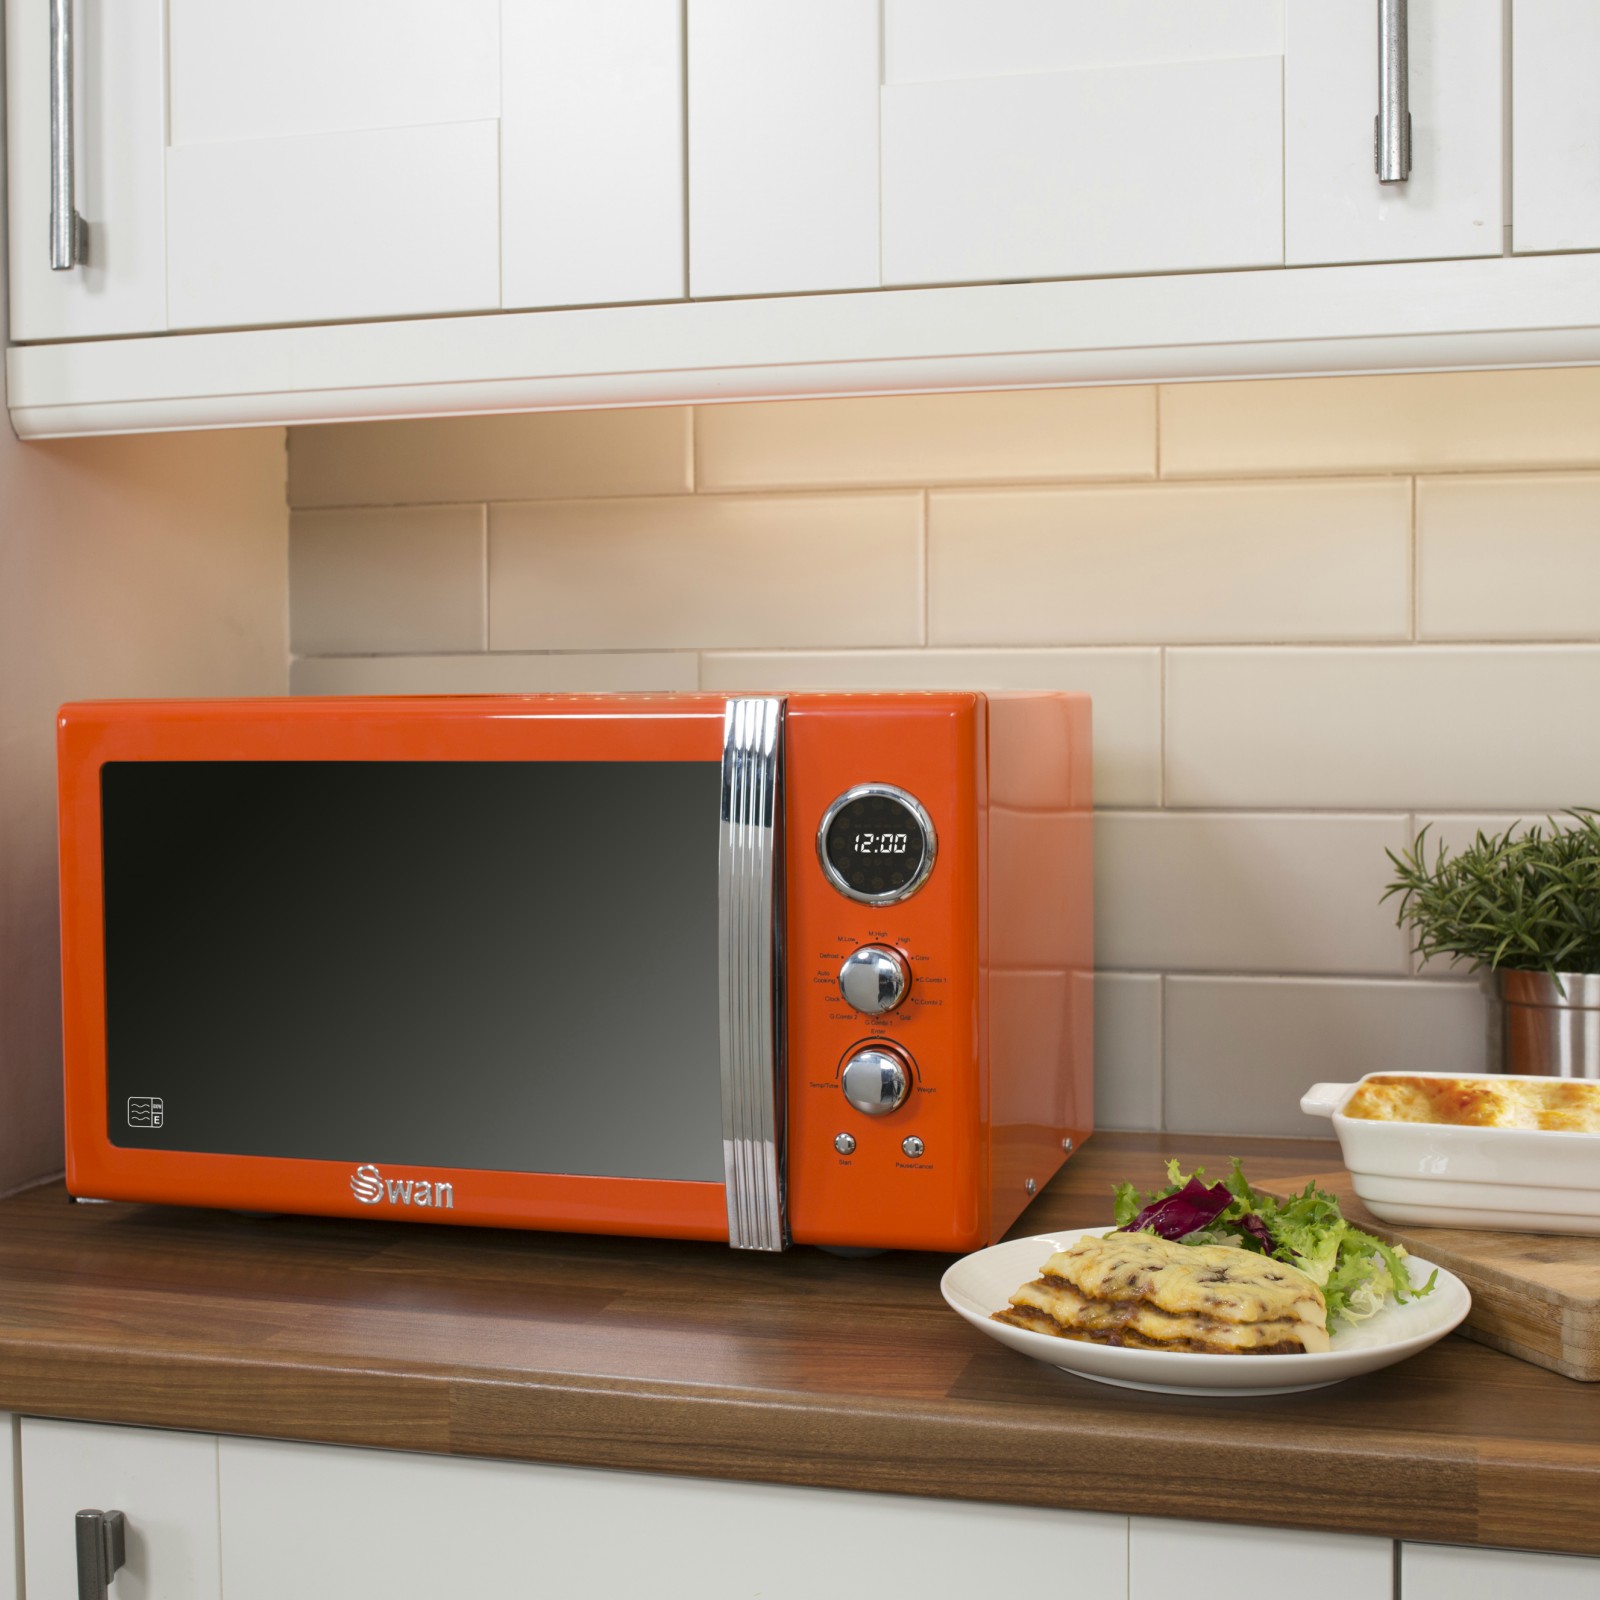 Лучшие свч печи. Микроволновая печь Hofmann HMW-720ss. Микроволновая печь Microwave Oven. Микроволновка в интерьере кухни. Микроволновая печь в интерьере кухни.